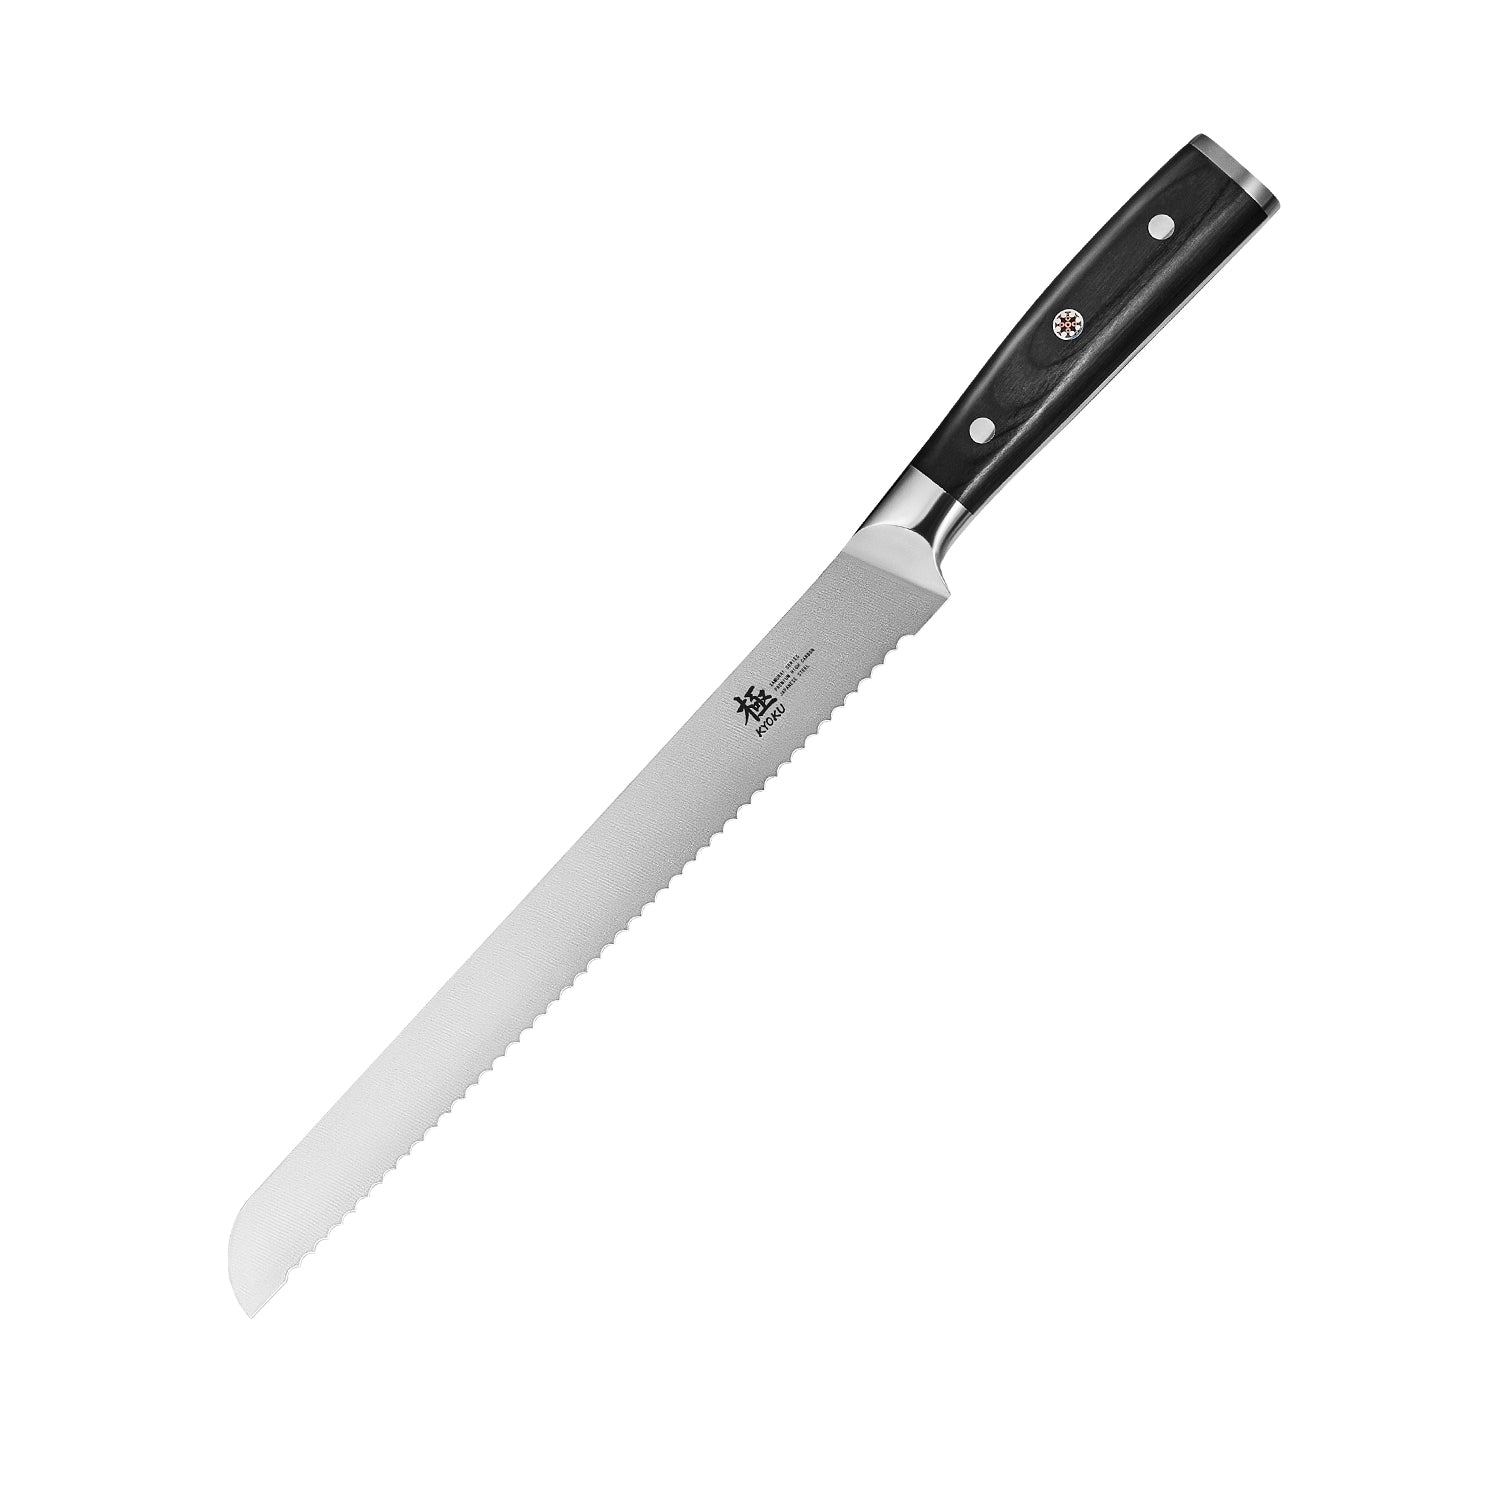 https://kyokuknives.com/cdn/shop/files/10--Serrated-Bread-Knife---Samurai-Series-Kyoku-Knives-1697014095623.jpg?v=1697616027